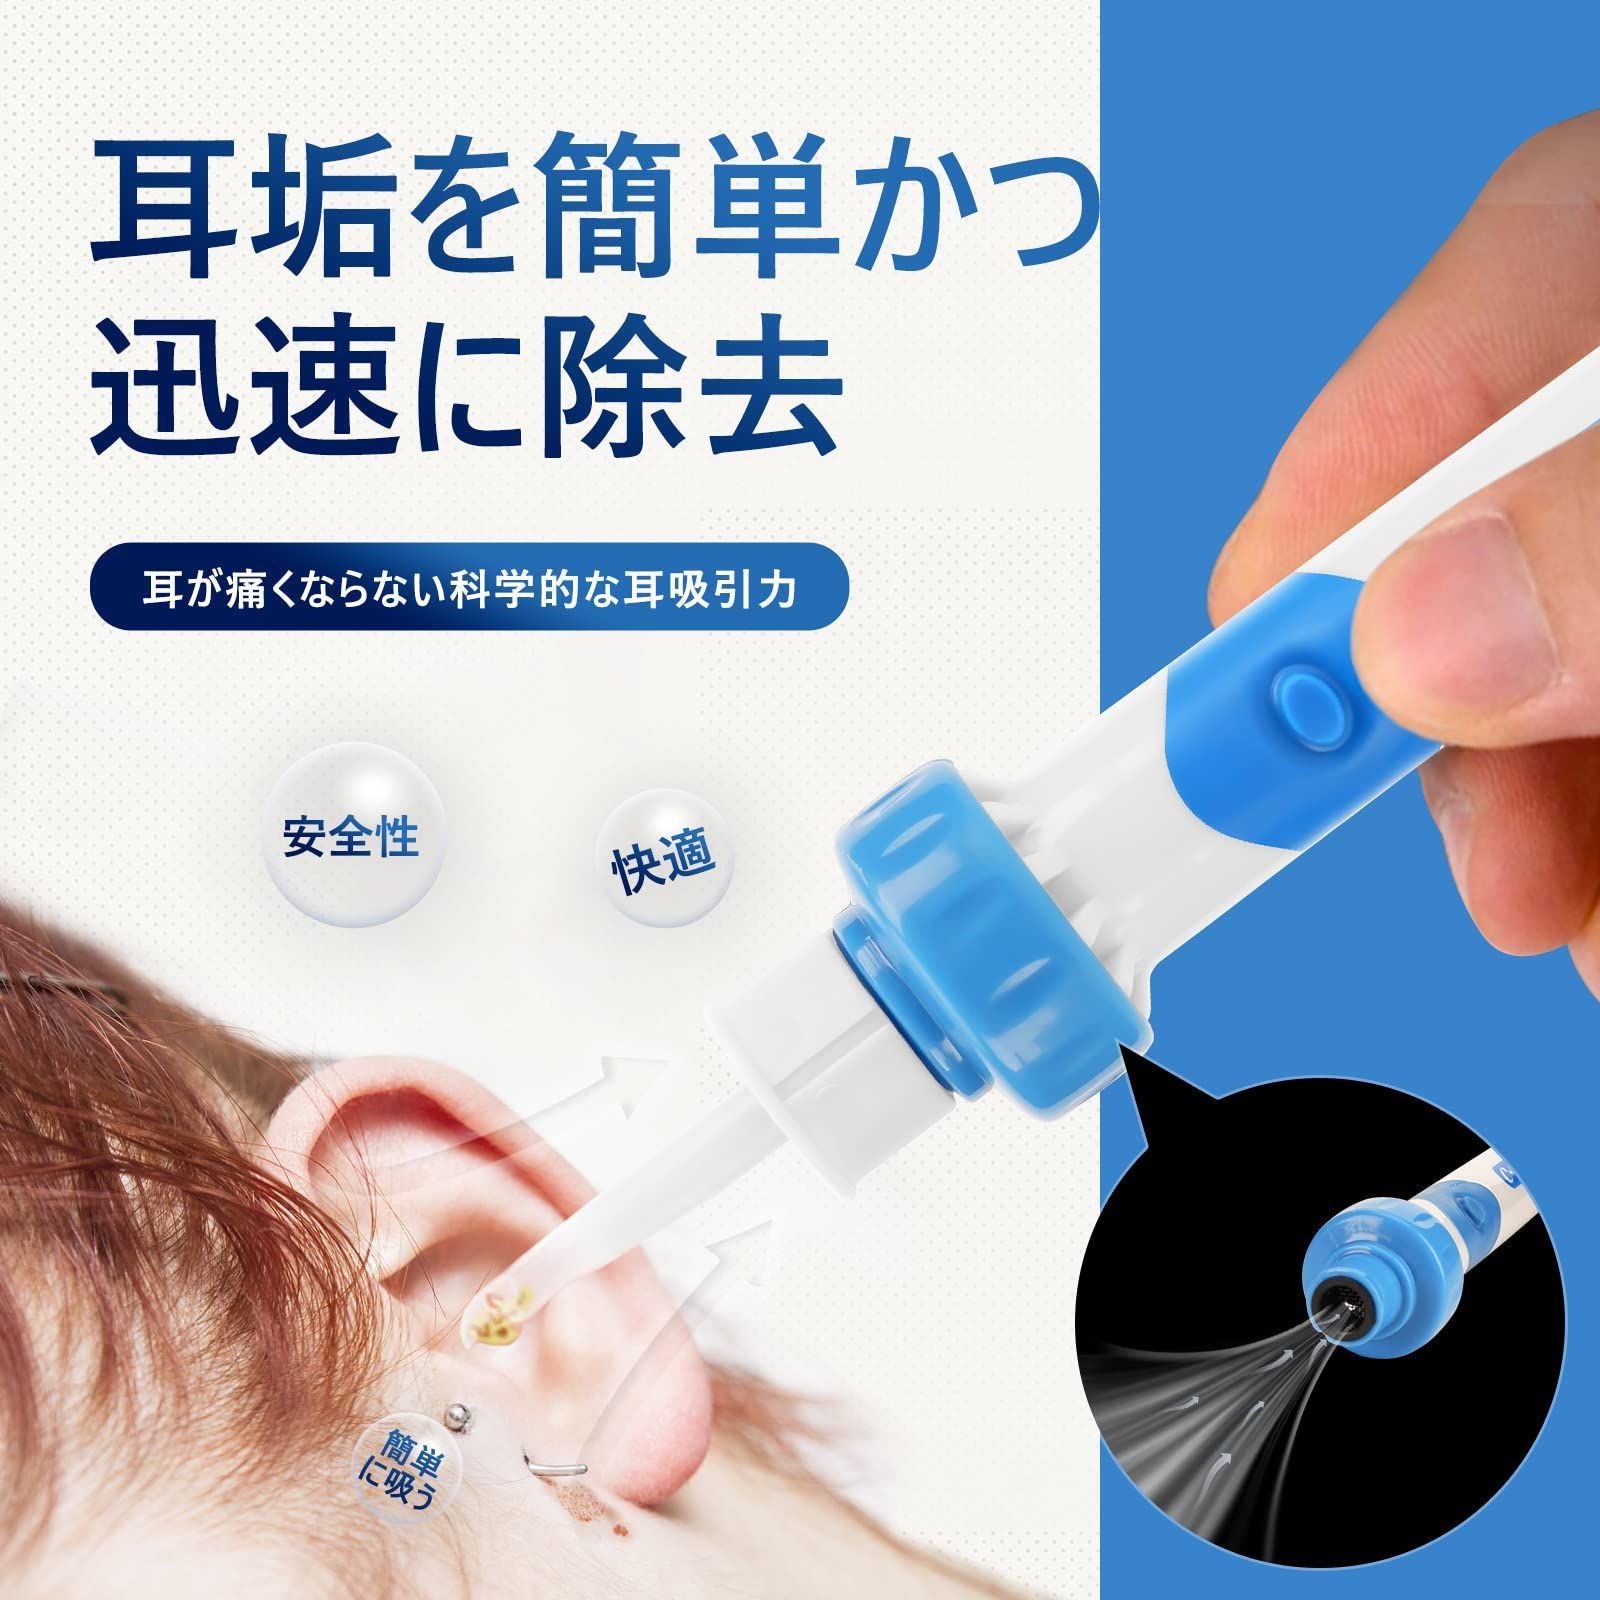 耳垢掃除キット セット クリーナー 耳かき 耳掃除 再利用可能 新品未